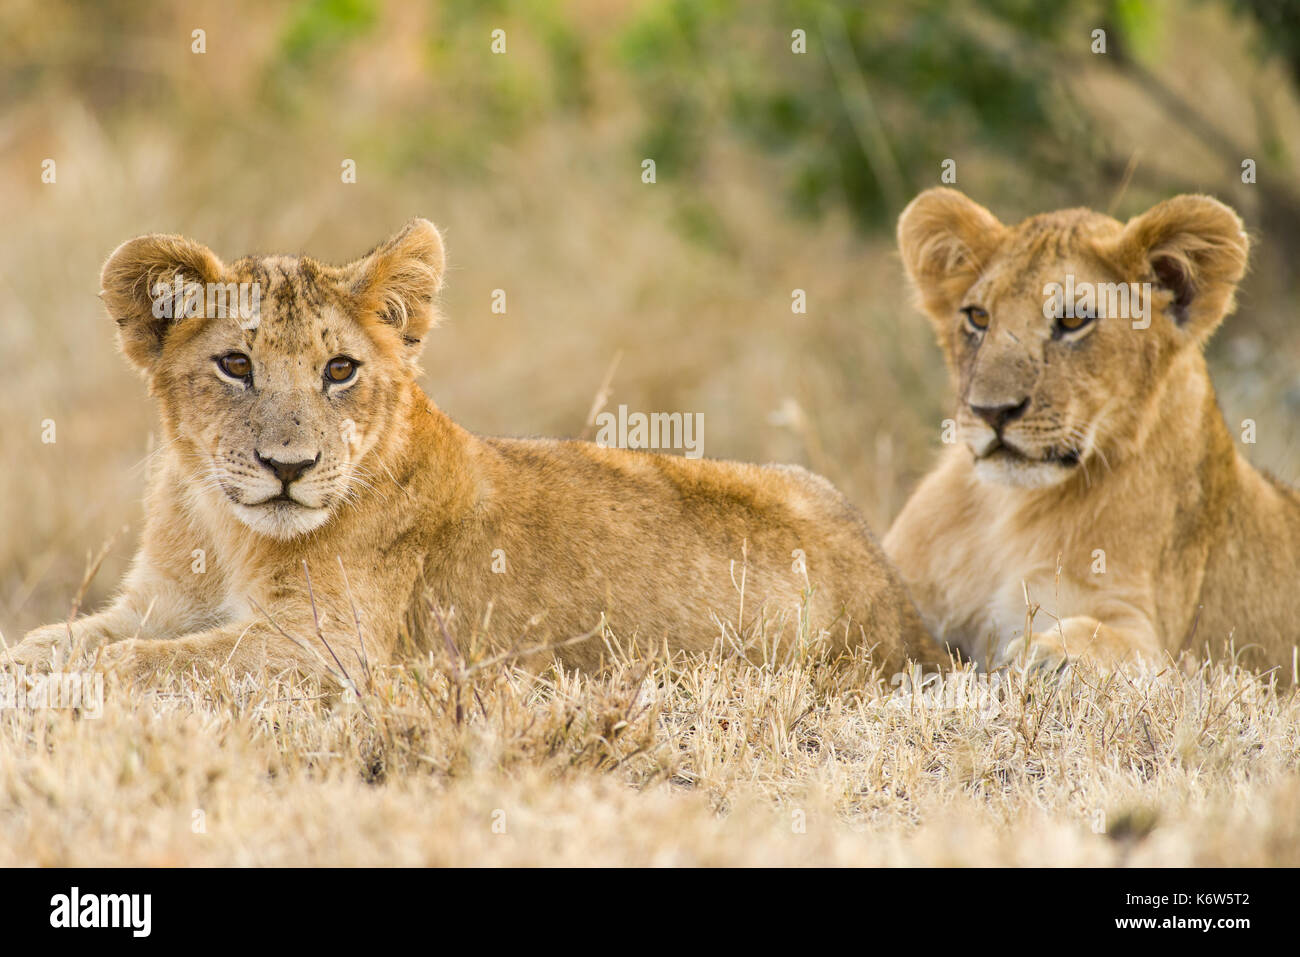 Lion cubs (Panthera leo) en attente de la mère au retour, Masai Mara, Kenya Banque D'Images